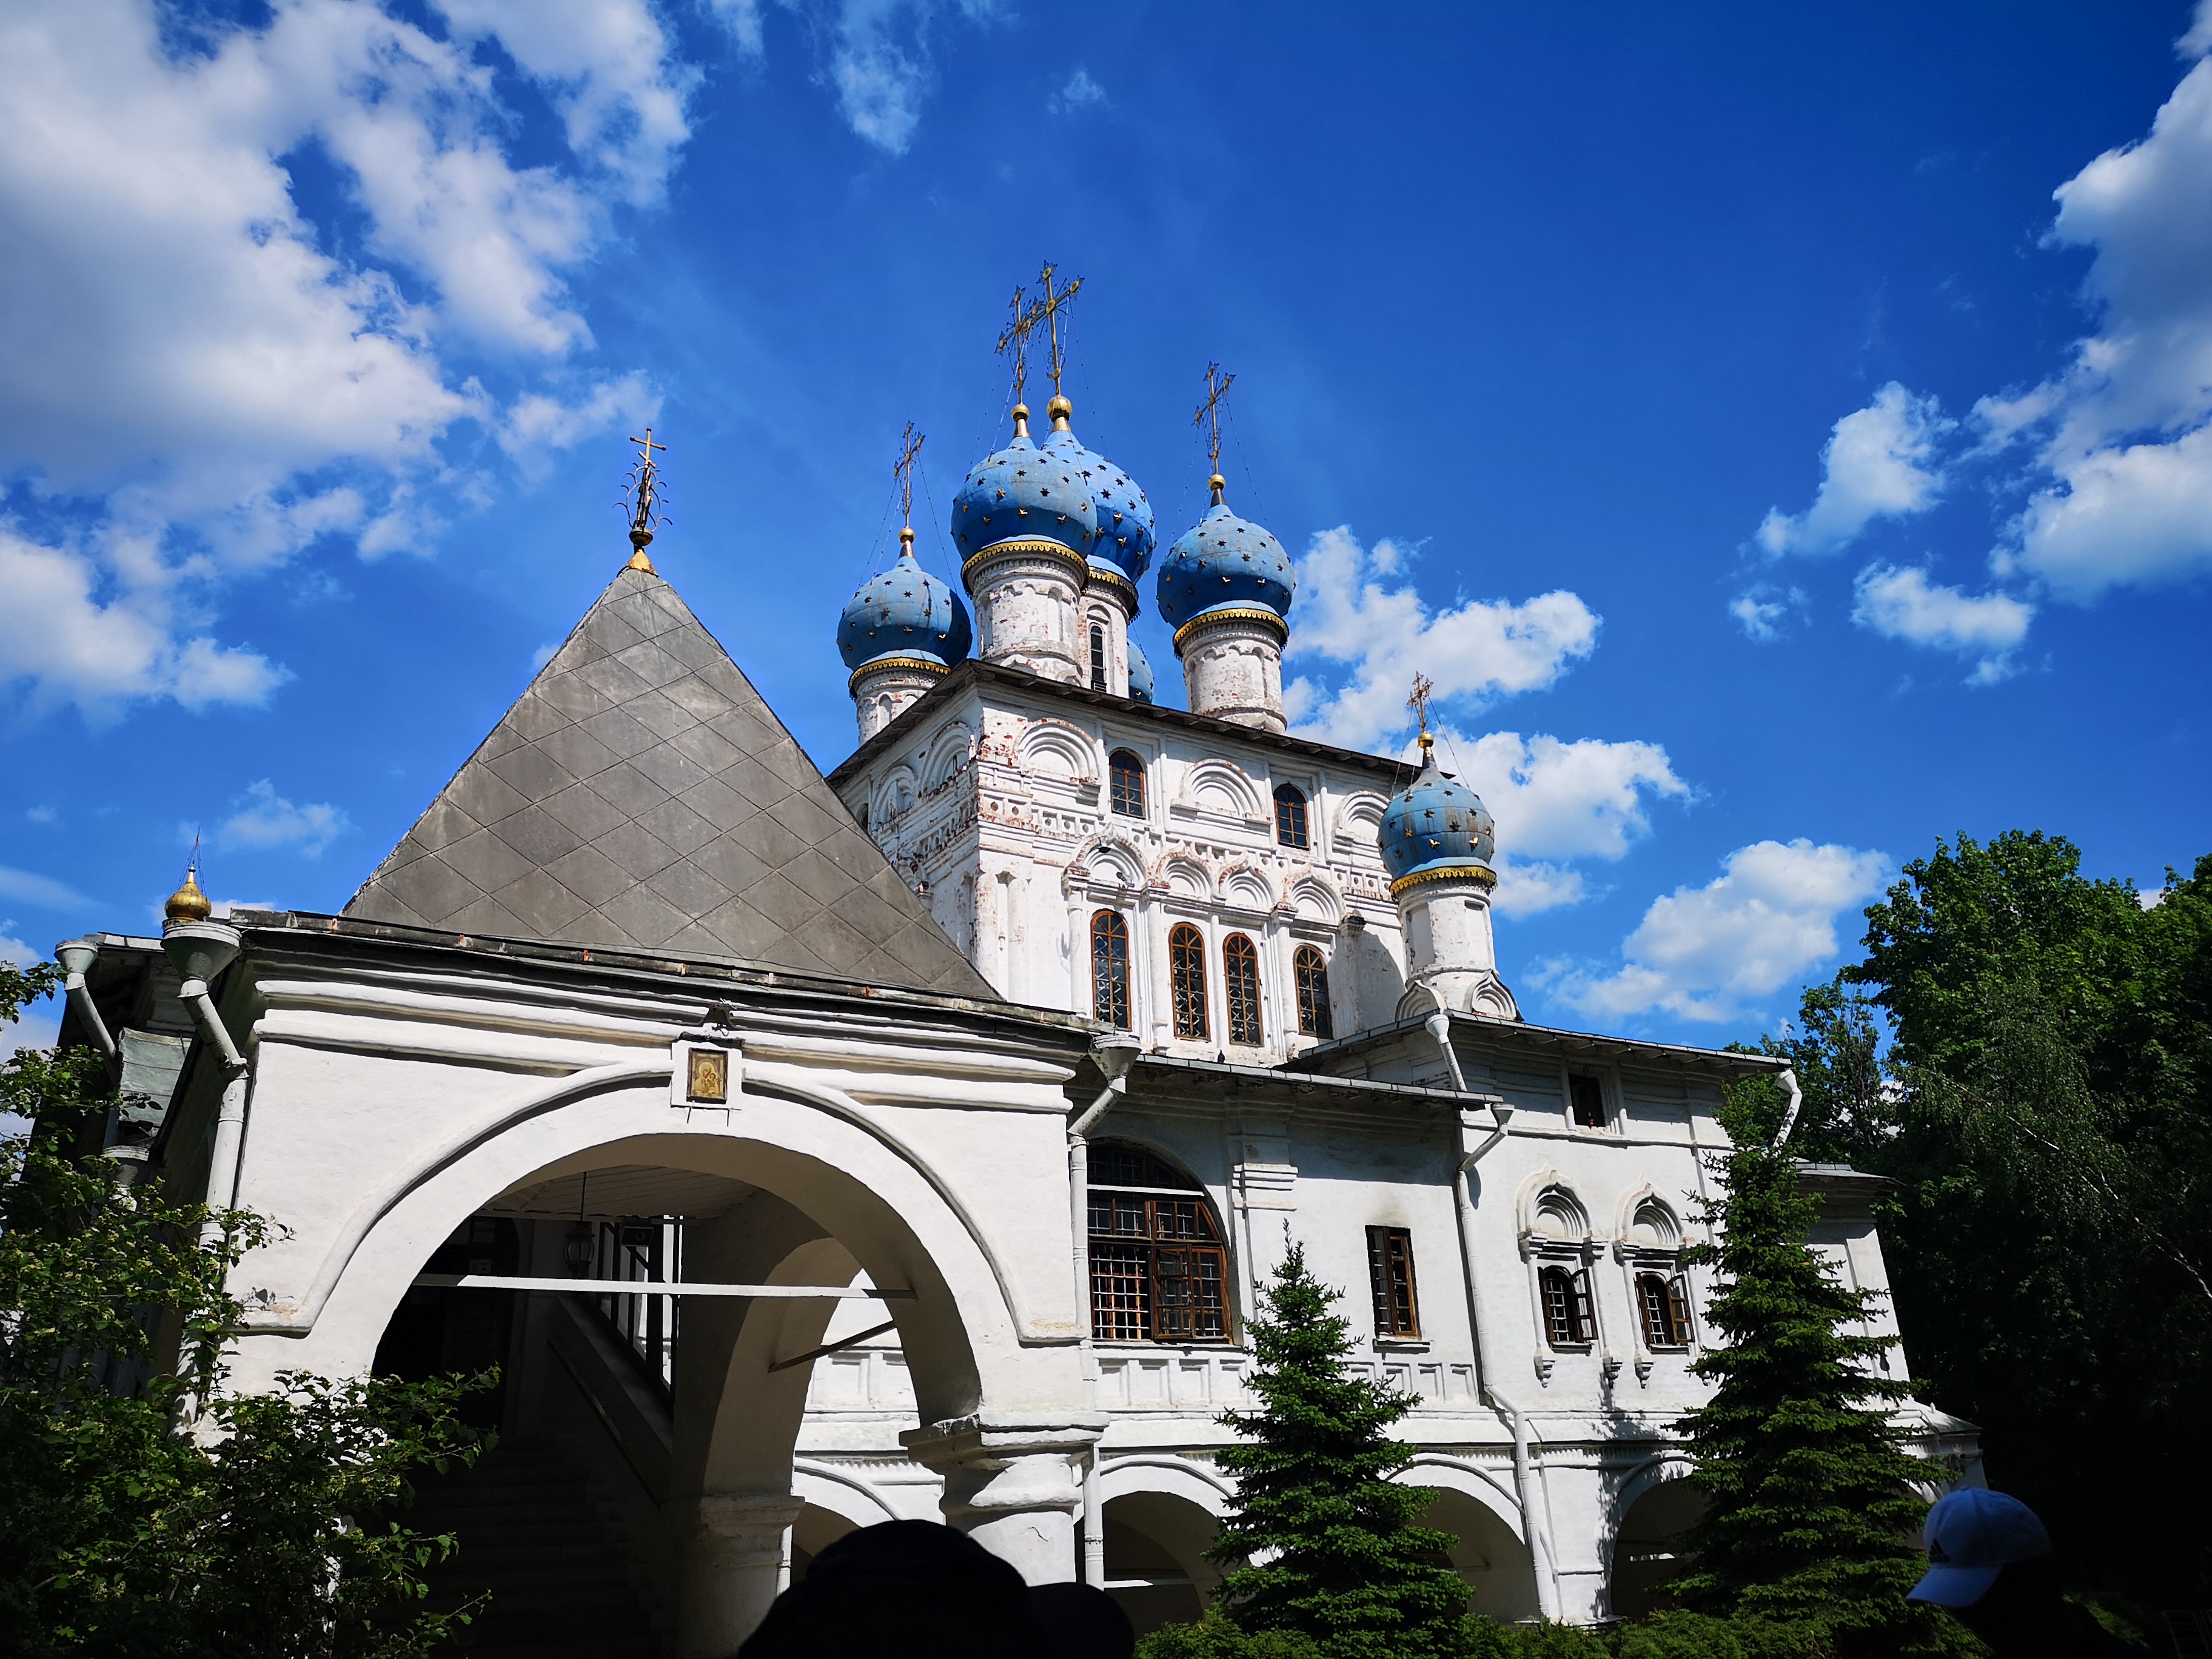 《途牛首发》童话般美丽的城堡——俄罗斯之旅(莫斯科